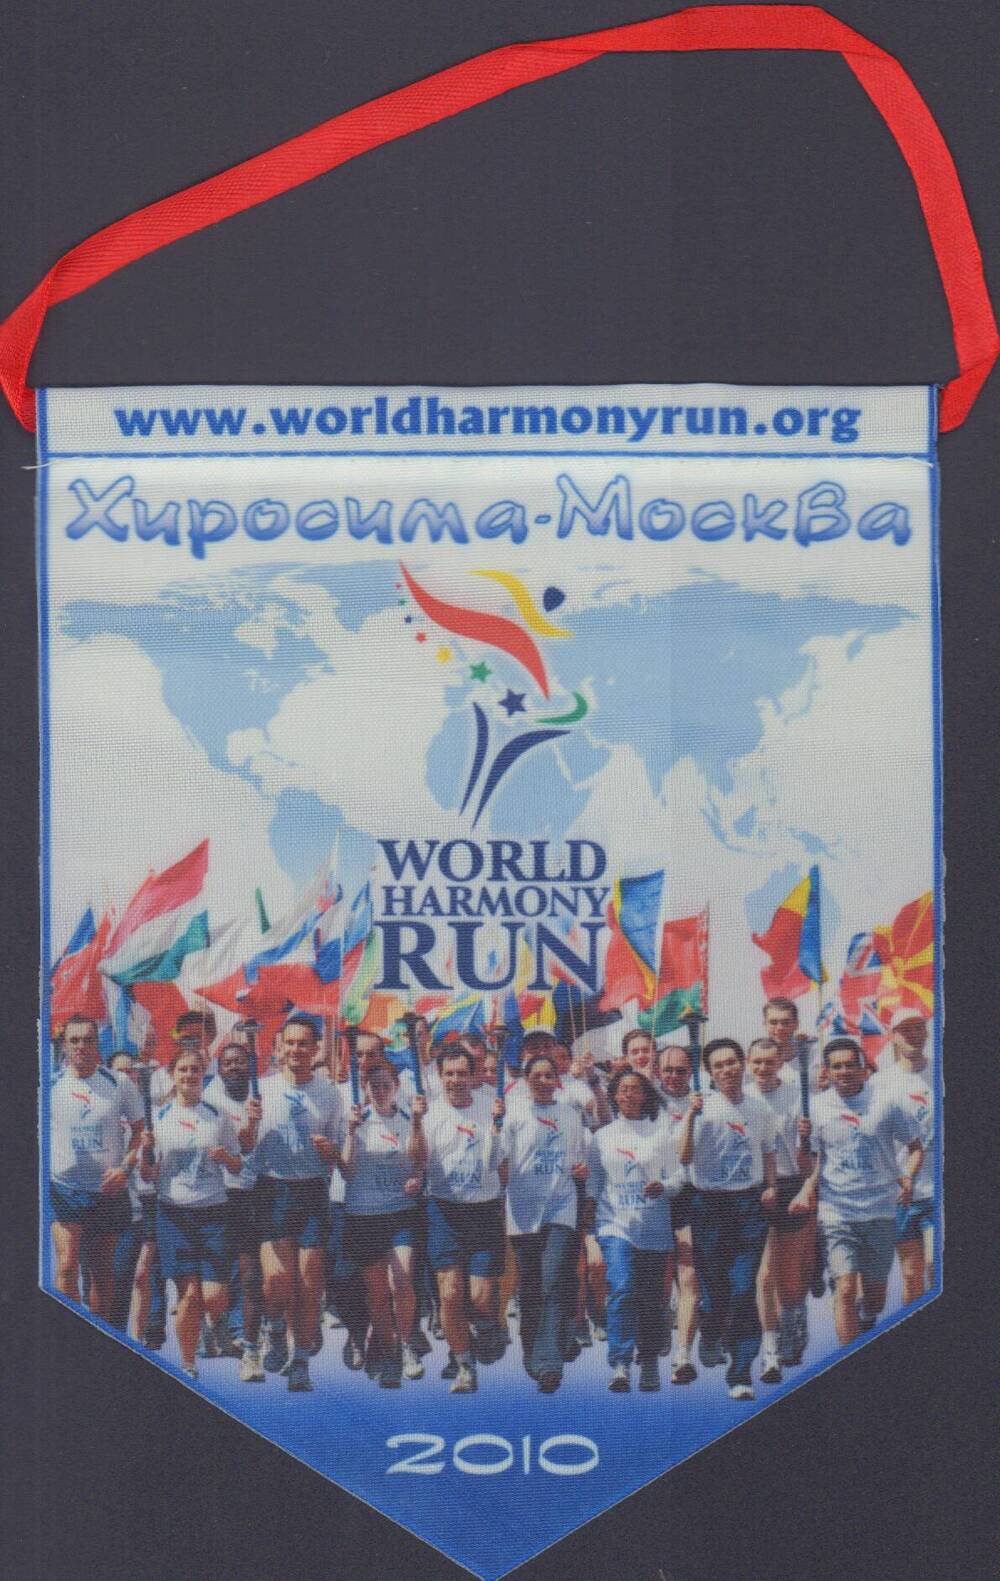 Вымпел, посвященный Всемирному бегу гармонии, с надписью Хиросима-Москва, 2010 г